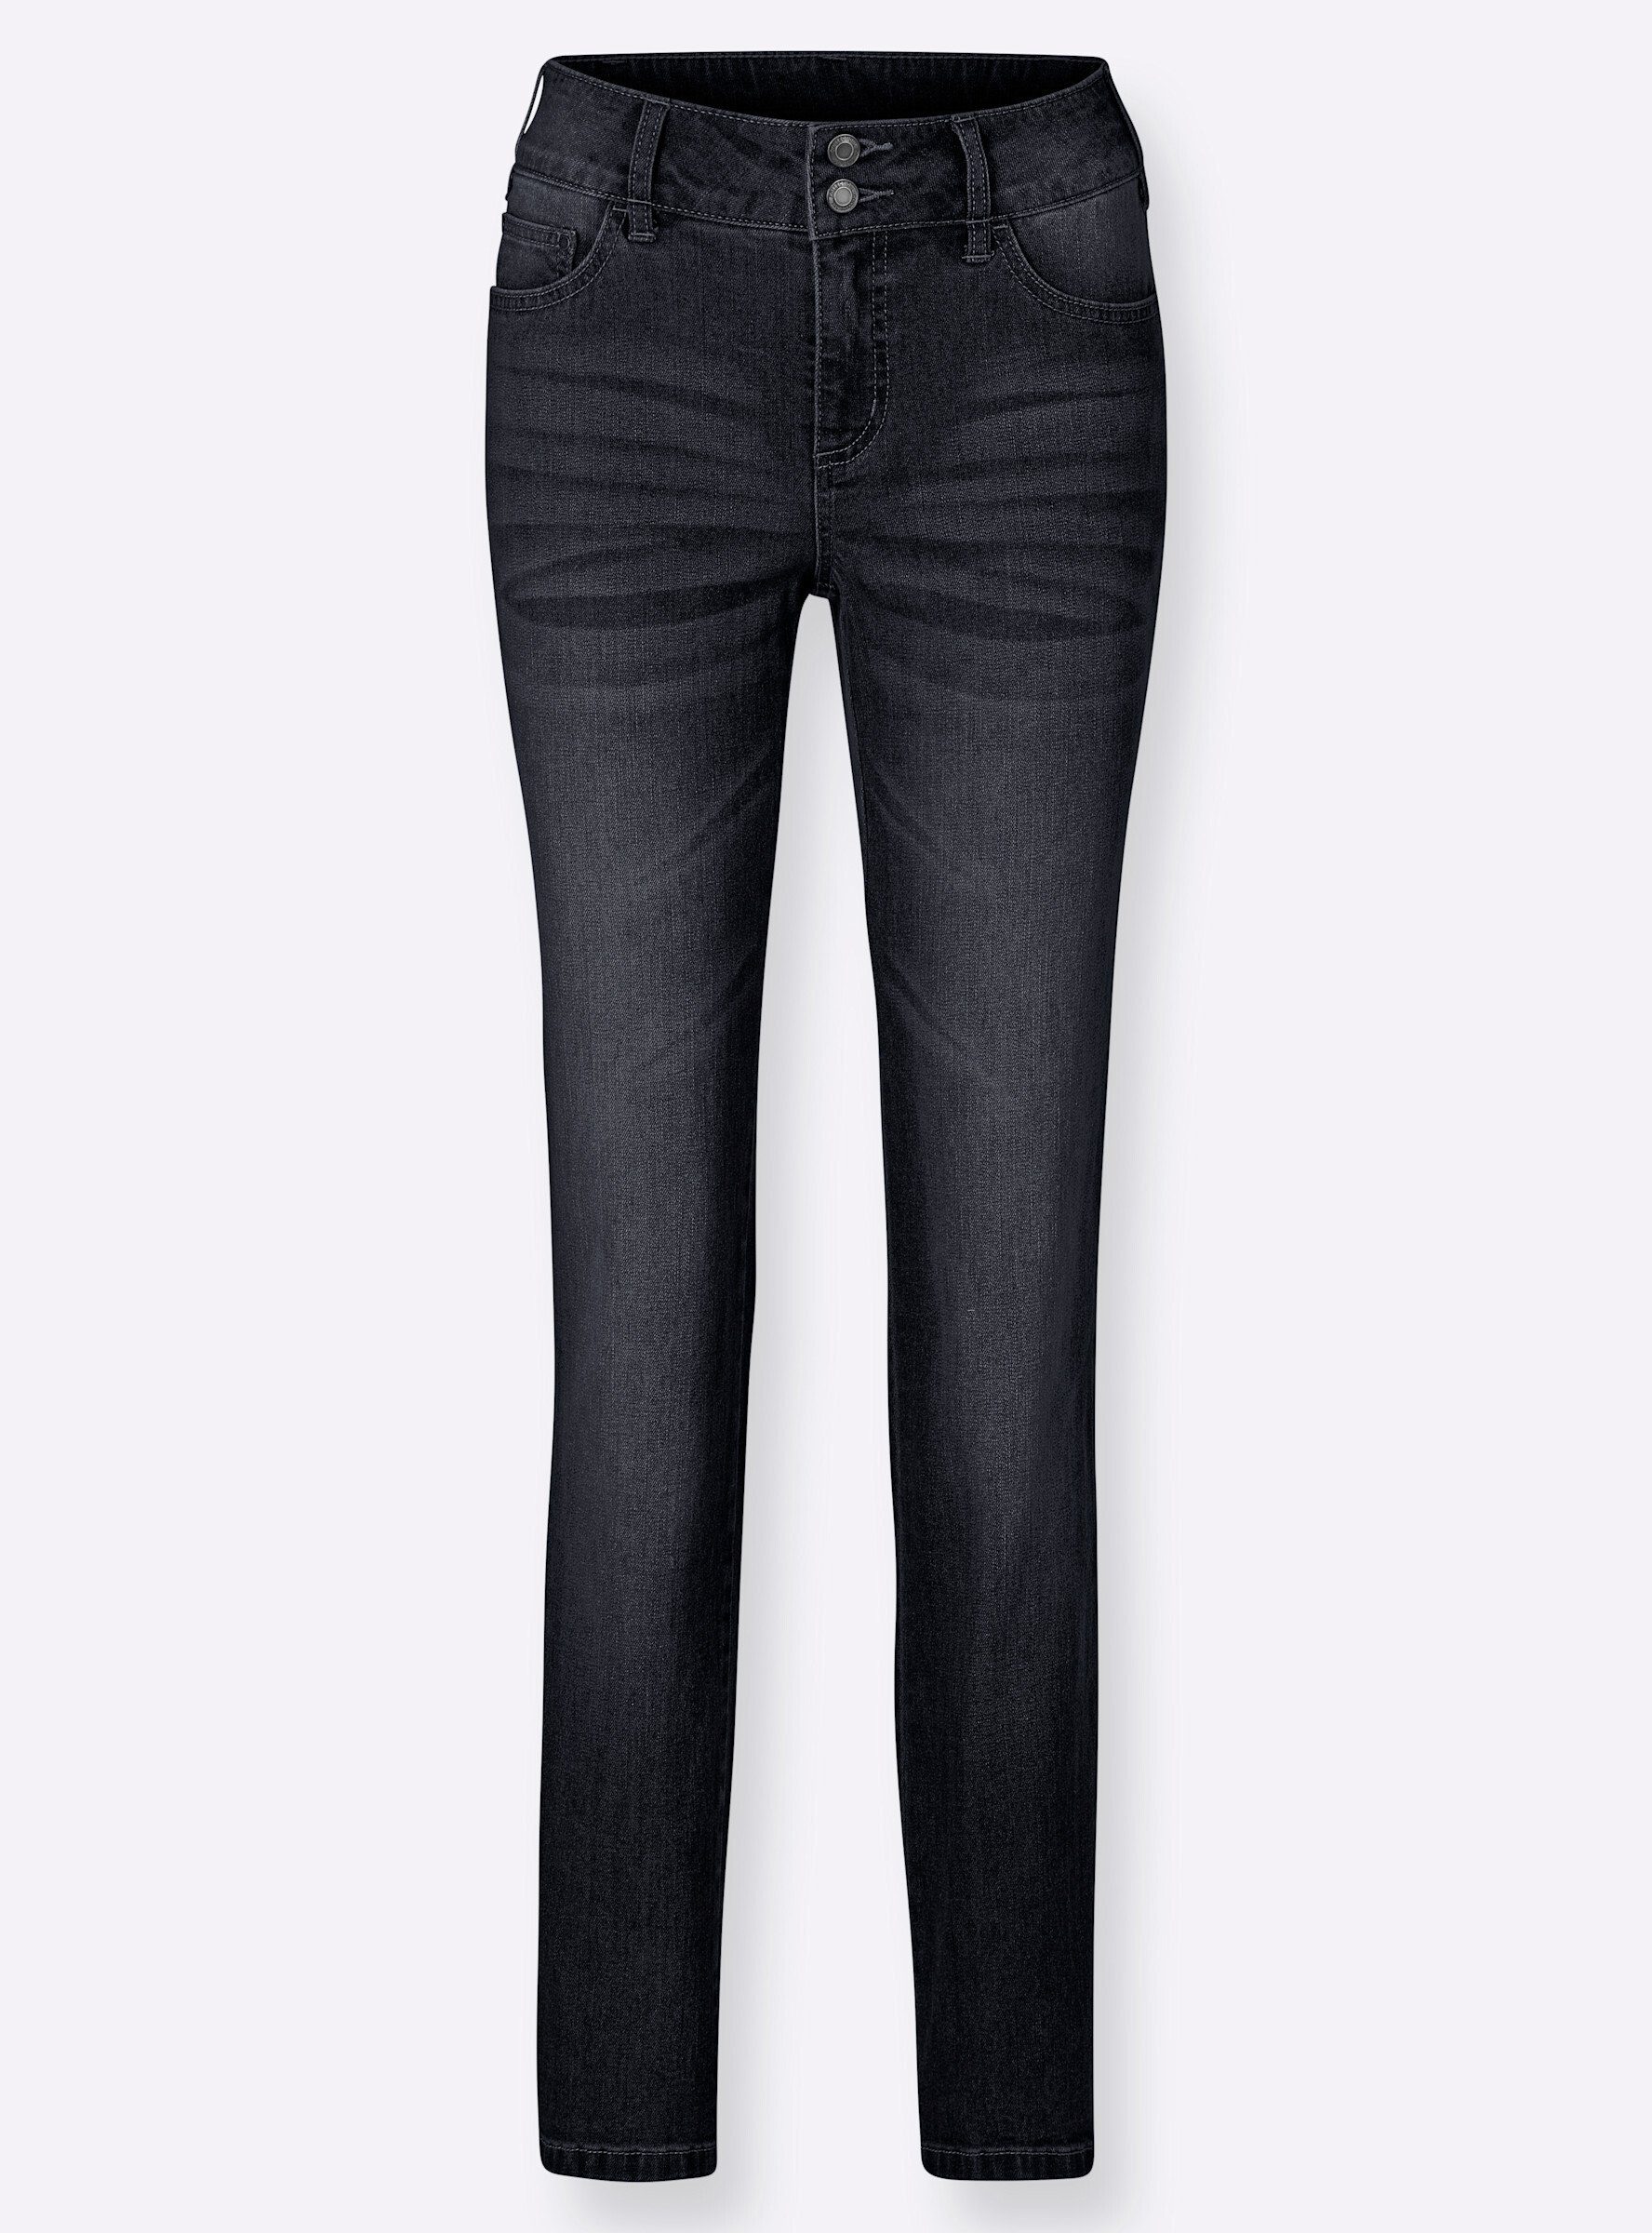 Jeans WITT WEIDEN black-denim Bequeme